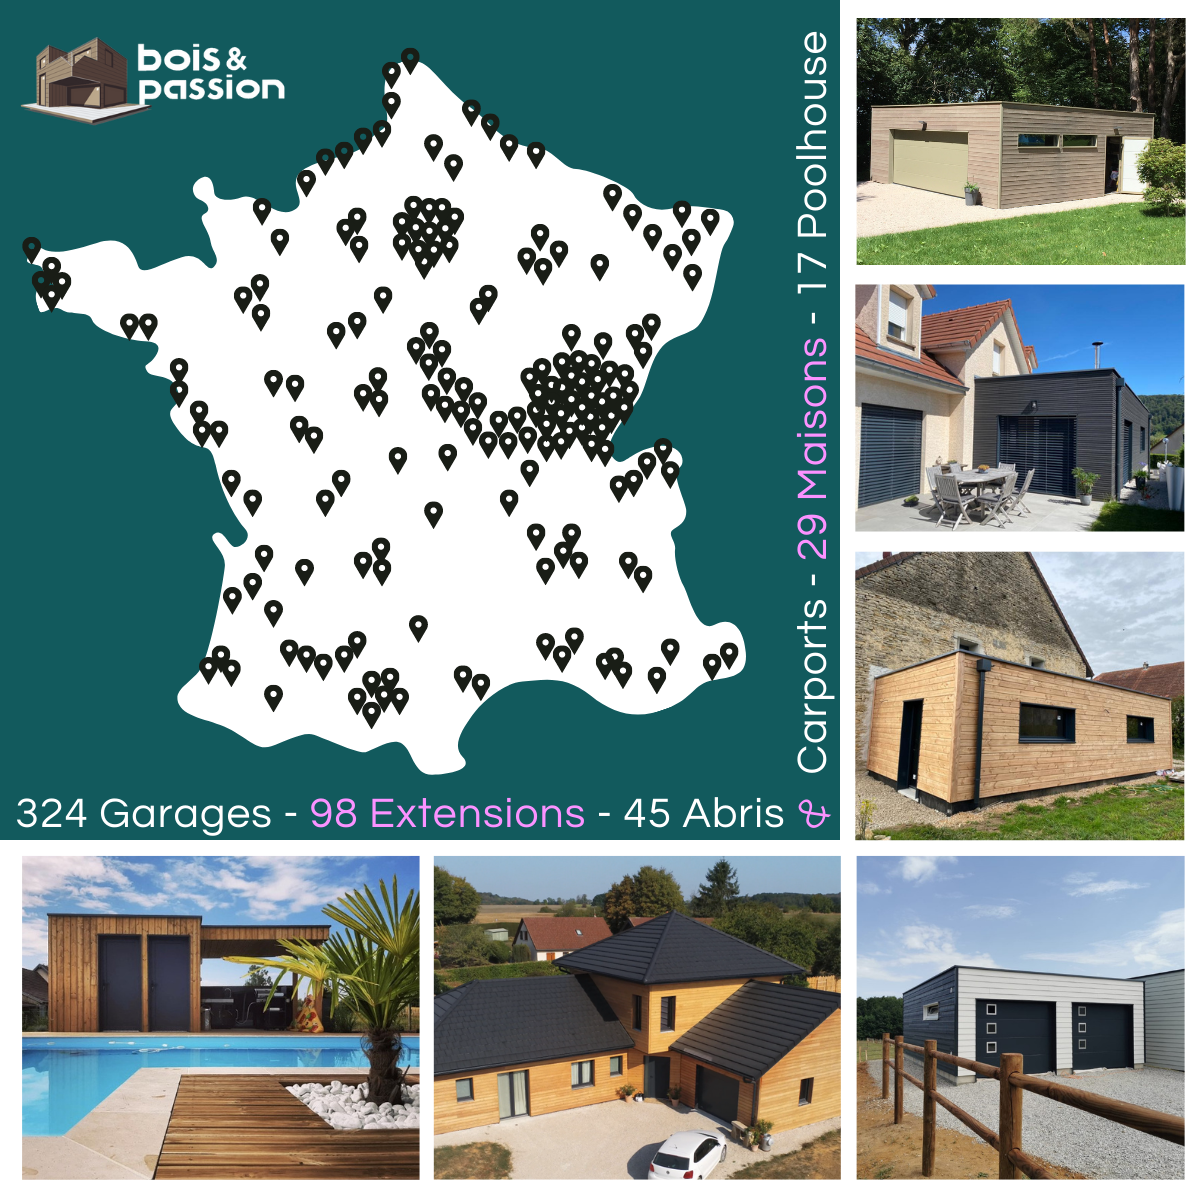 513 constructions ossature bois à travers la France depuis 2015